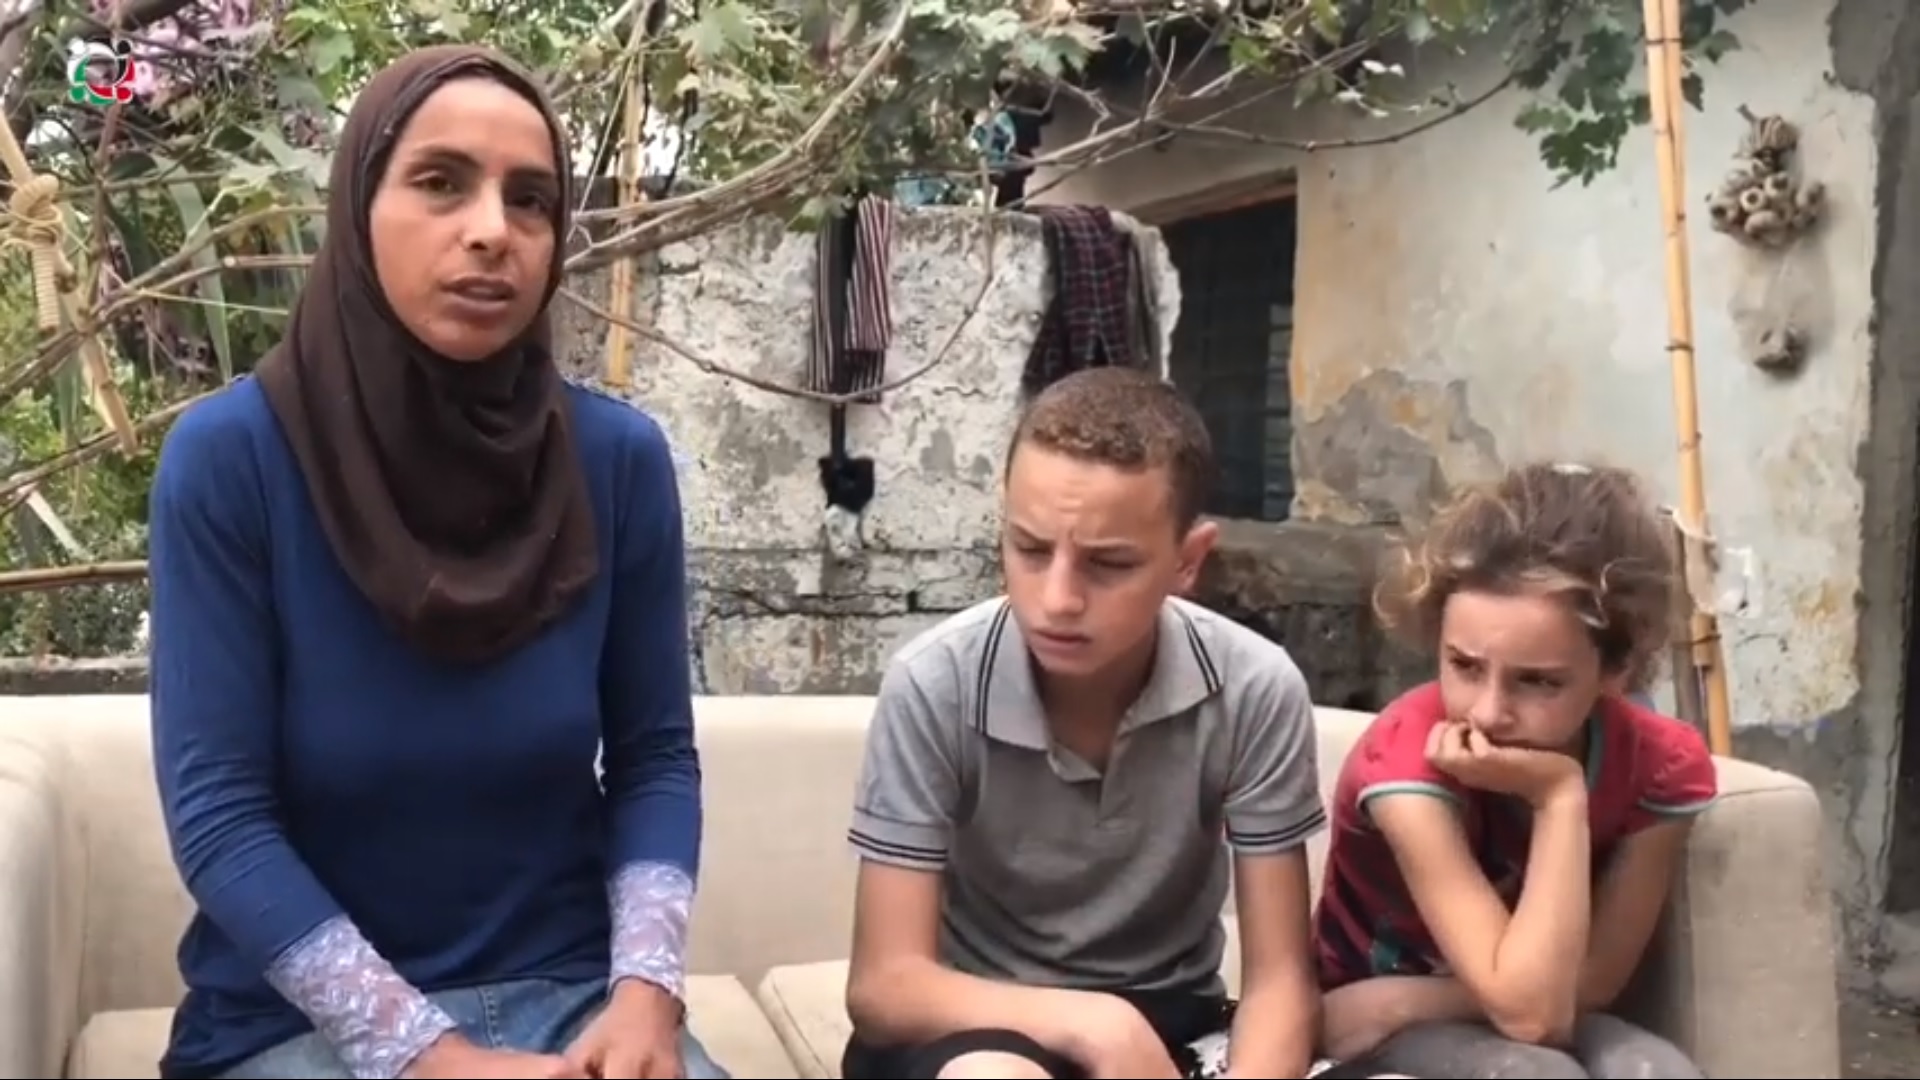 سميرة عابدة فلسطينية سورية مهجرة من مخيم الرمل اللاذقية إلى تركيا تروي قصة معاناتها وألمها